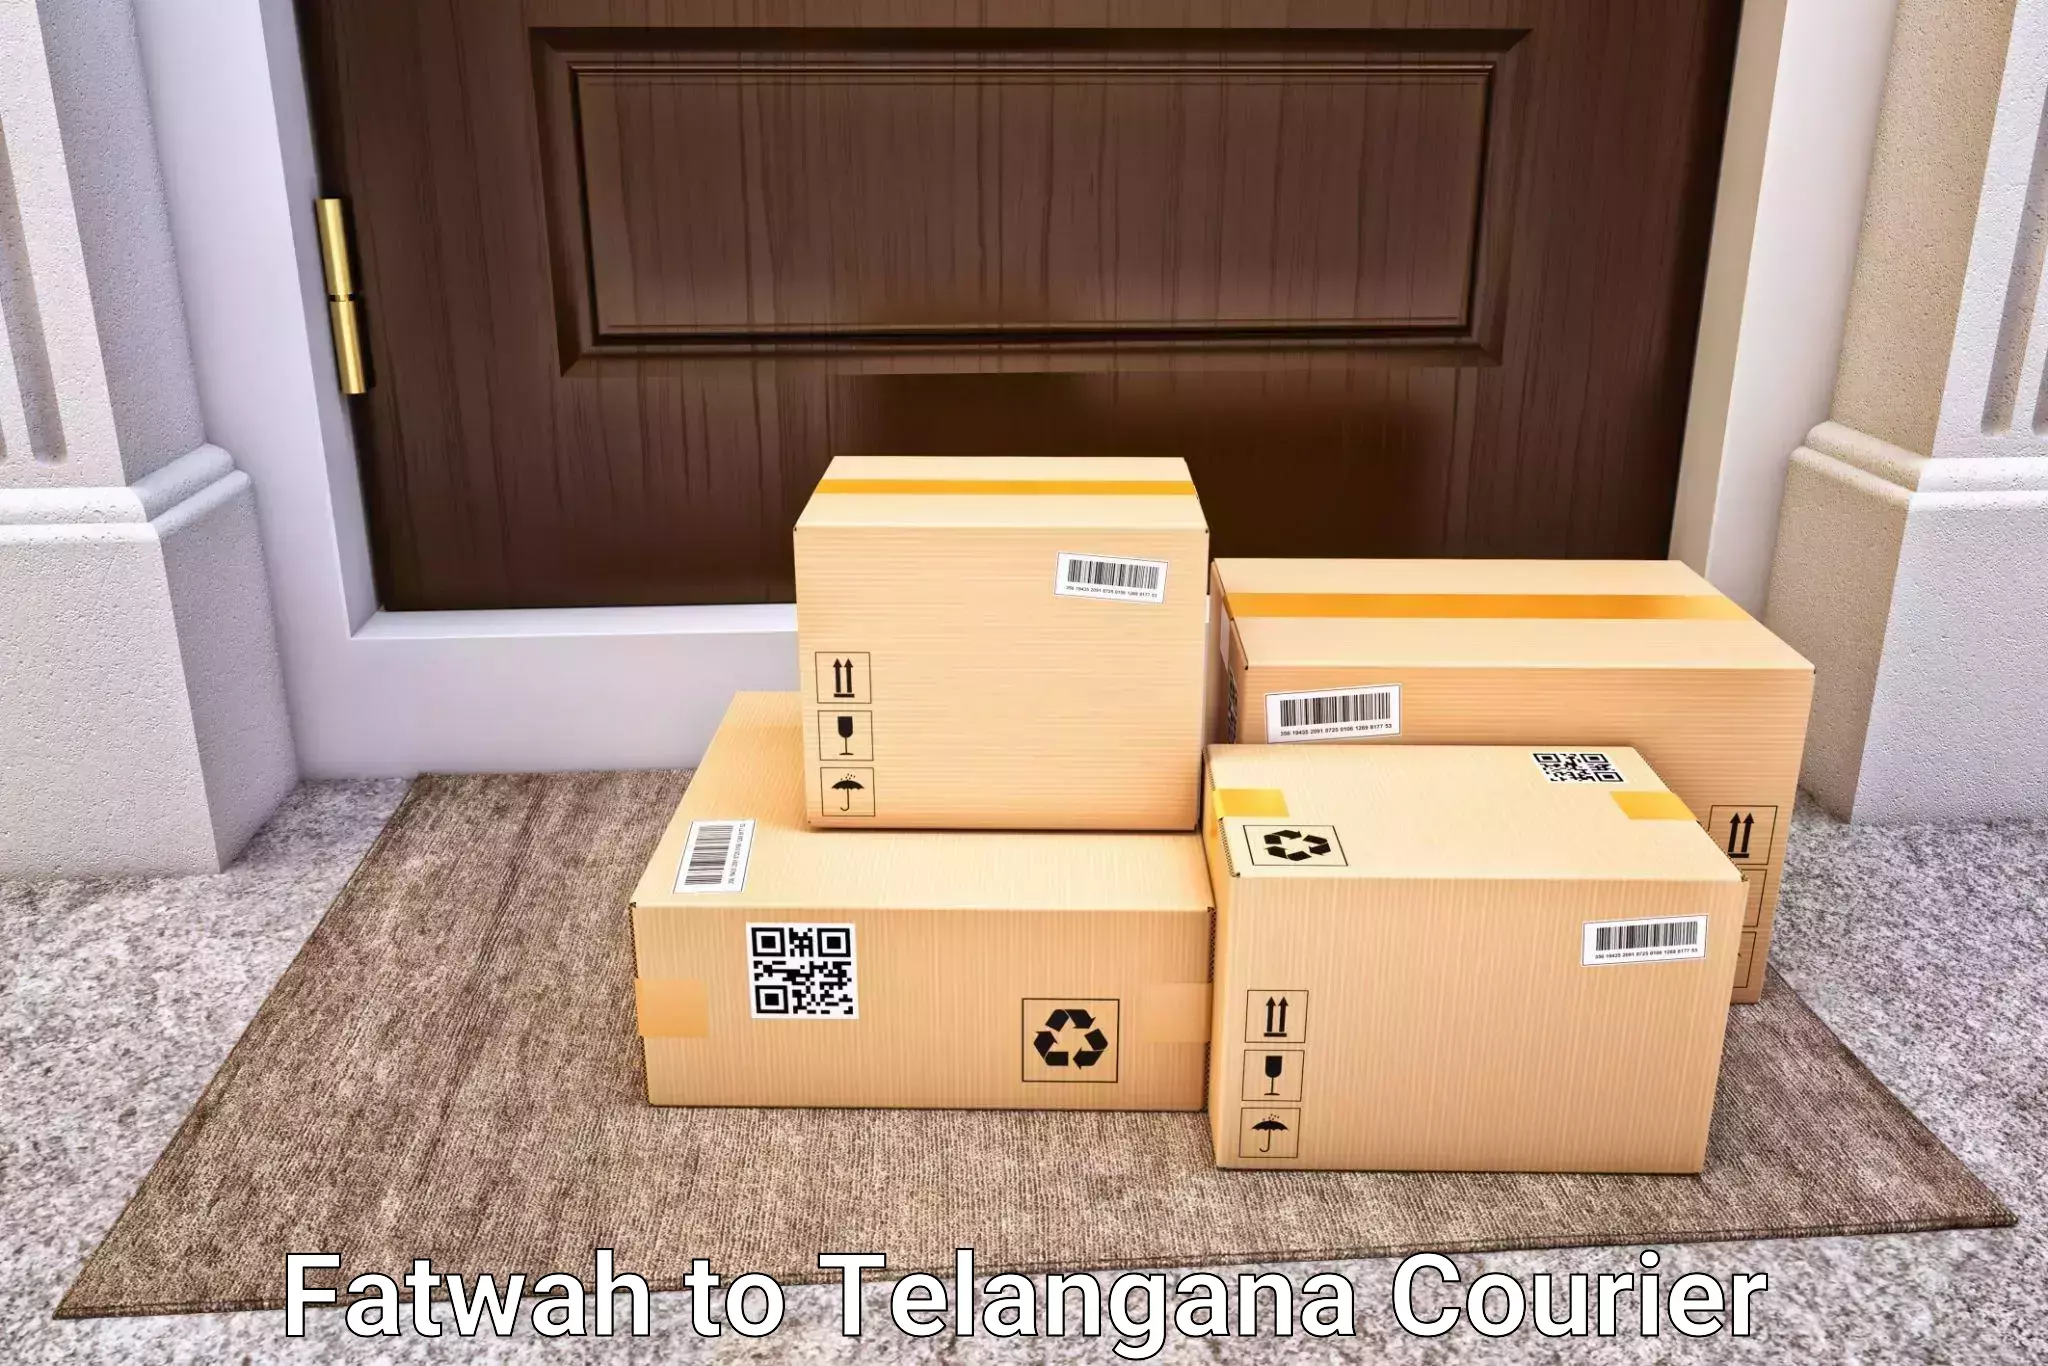 Sports equipment baggage shipping Fatwah to Dahegaon